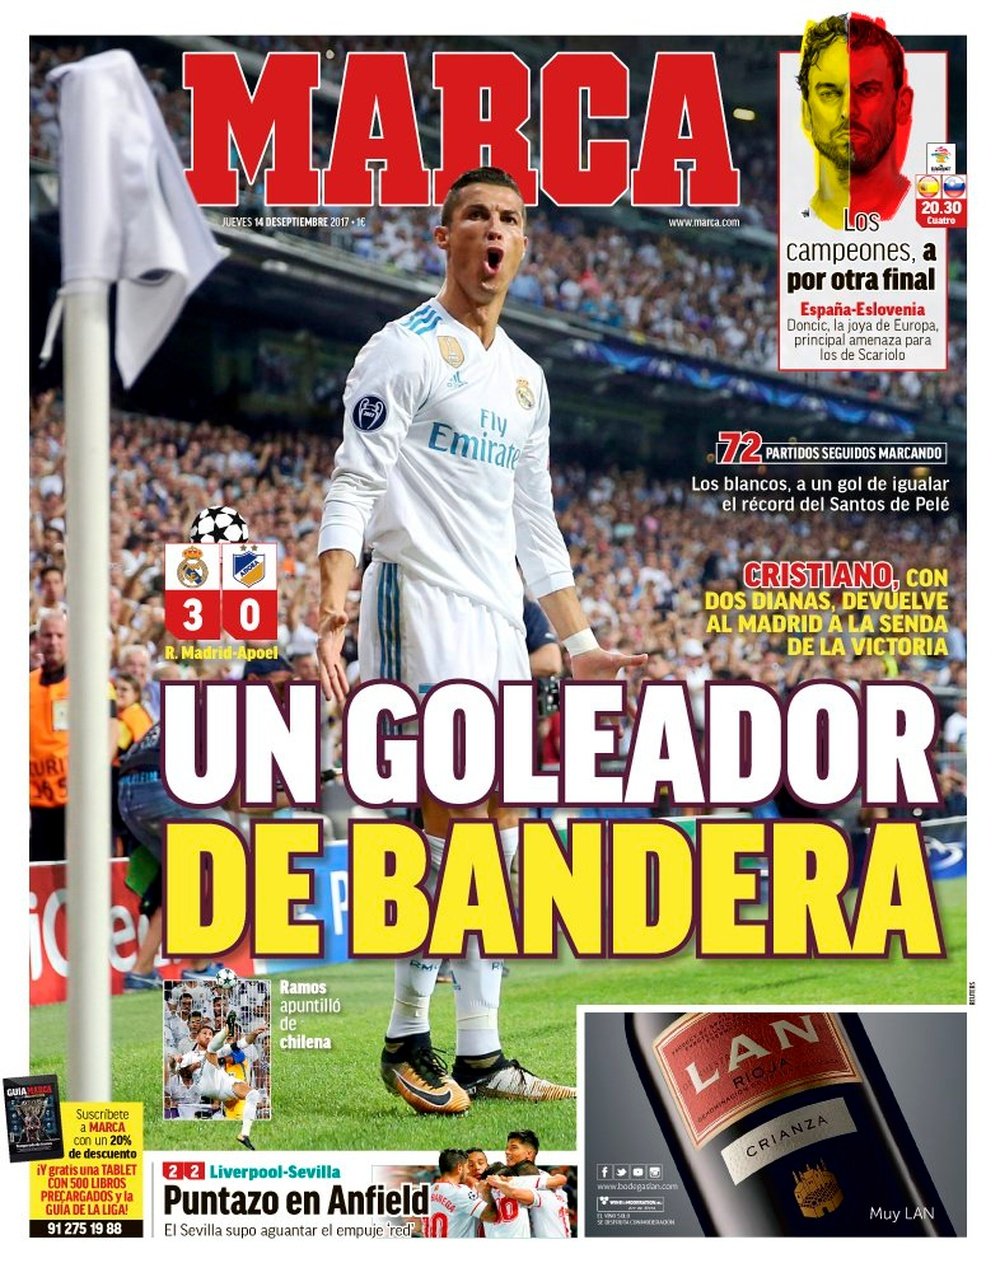 La Une du quotidien sportif espagnol 'Marca', du 14-09-17. Marca